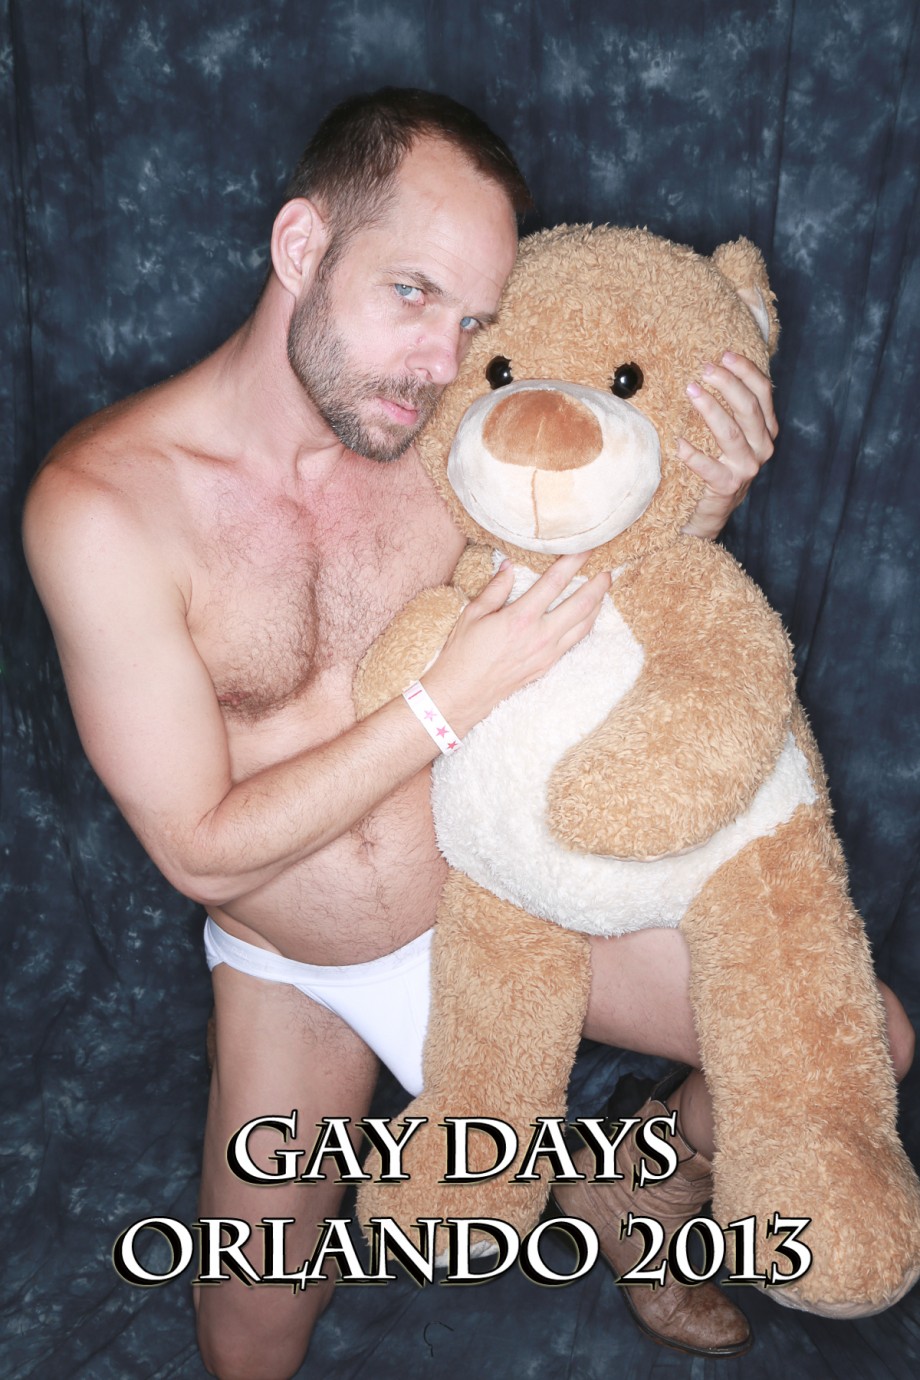 teddy bear with Sex